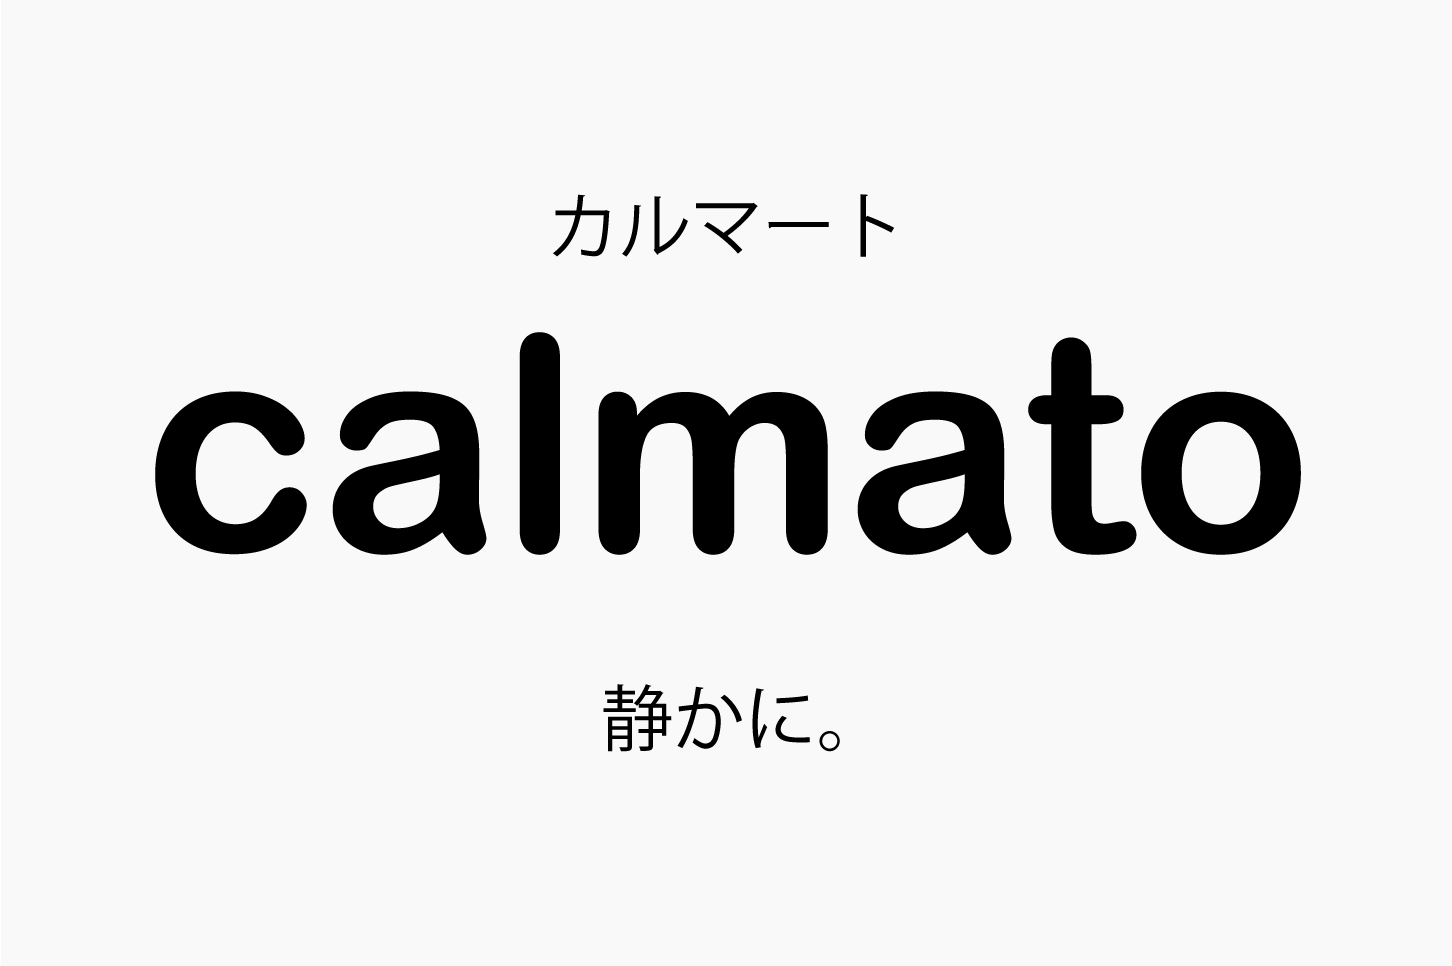 Calmato カルマート の意味 音楽用語辞典